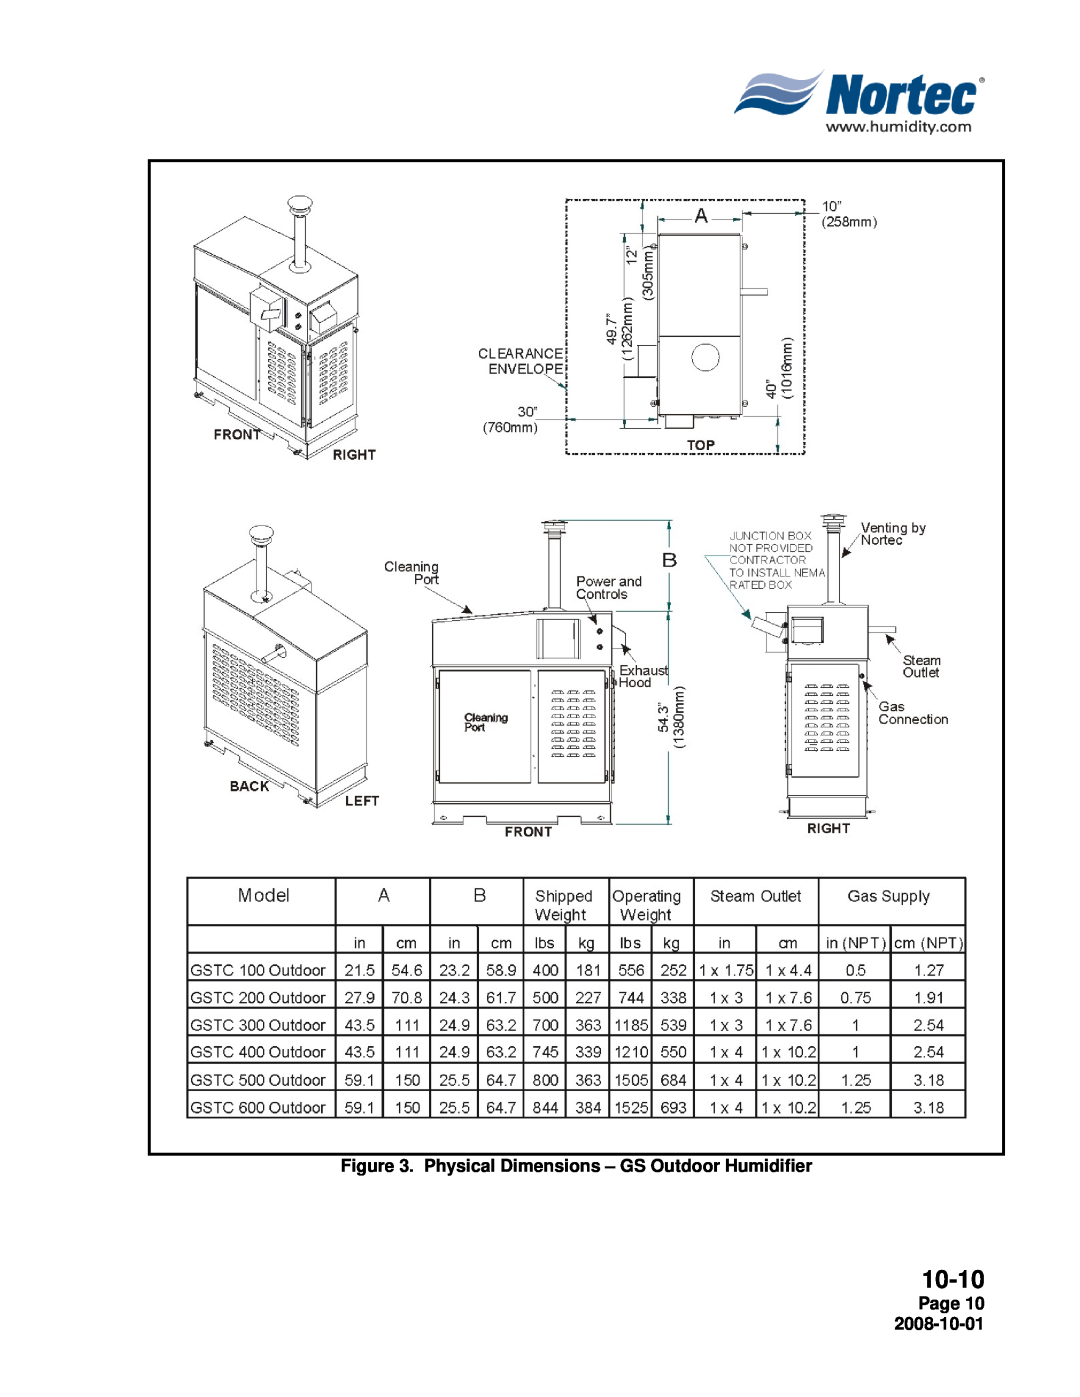 Nortec Industries GSP Indoor, GSTC Outdoor, GSTC Indoor manual 10-10, Page 